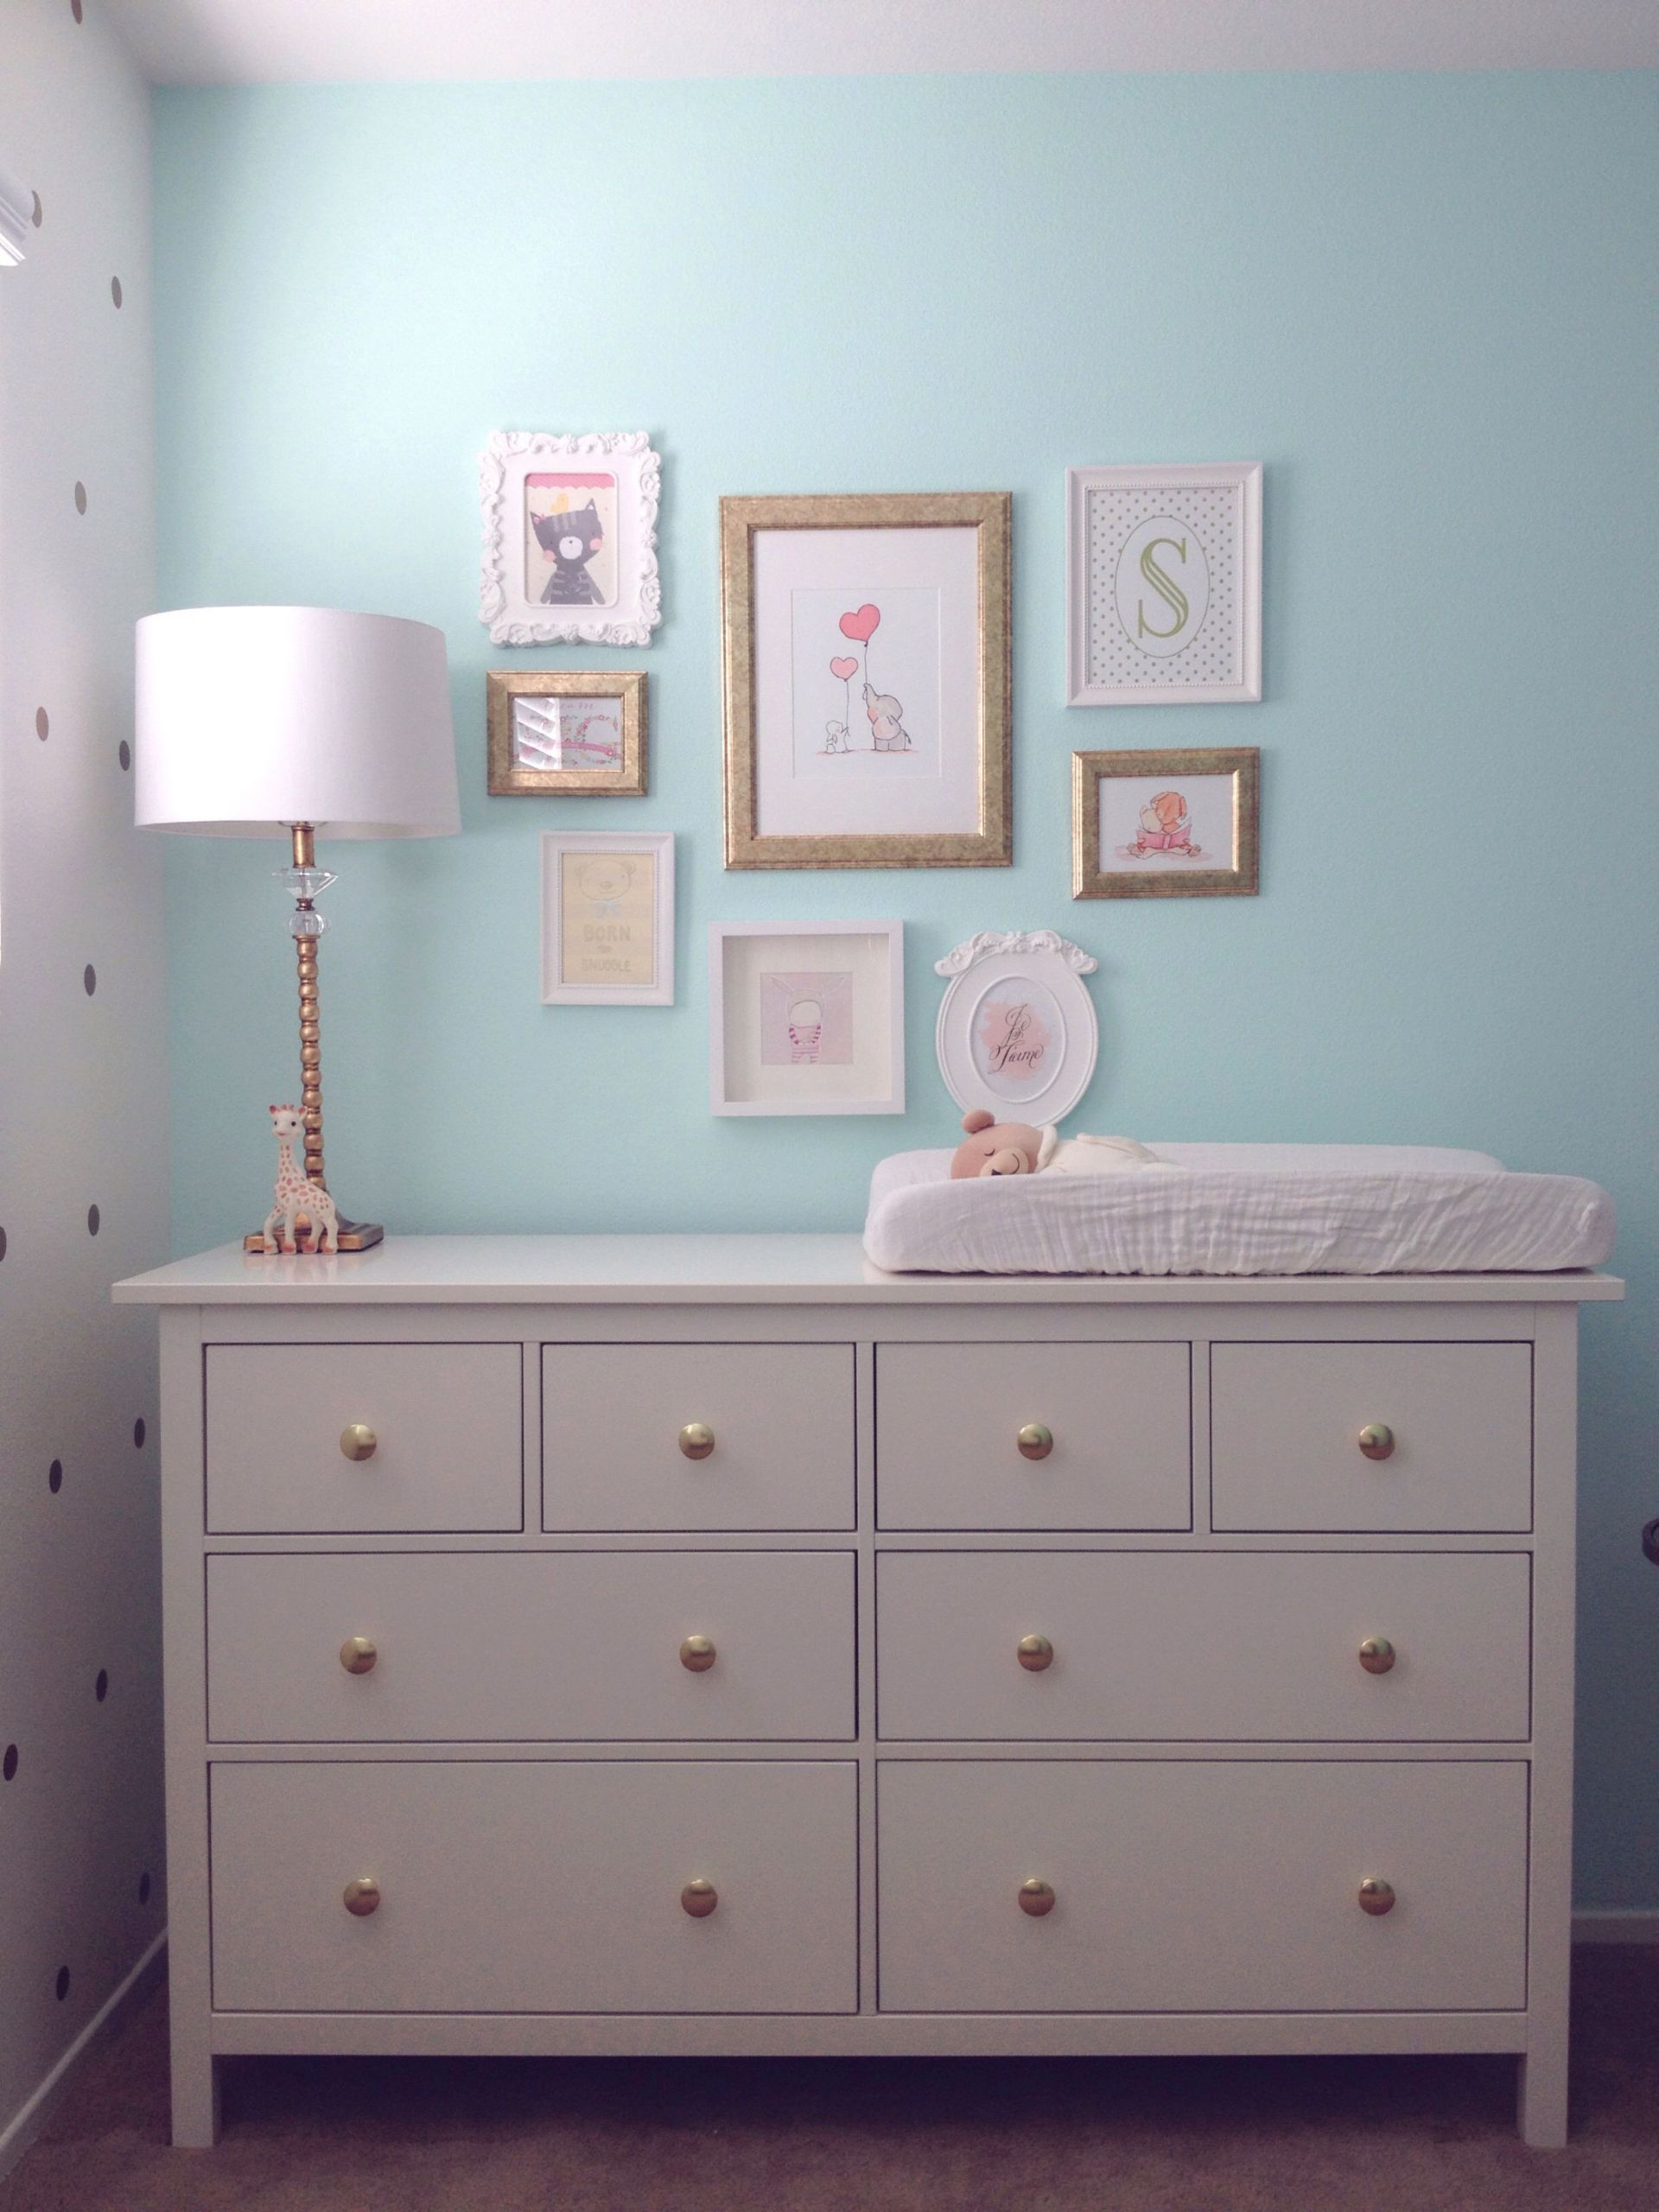 White Dresser For Baby Room
 Pin on Sydney s Nursery